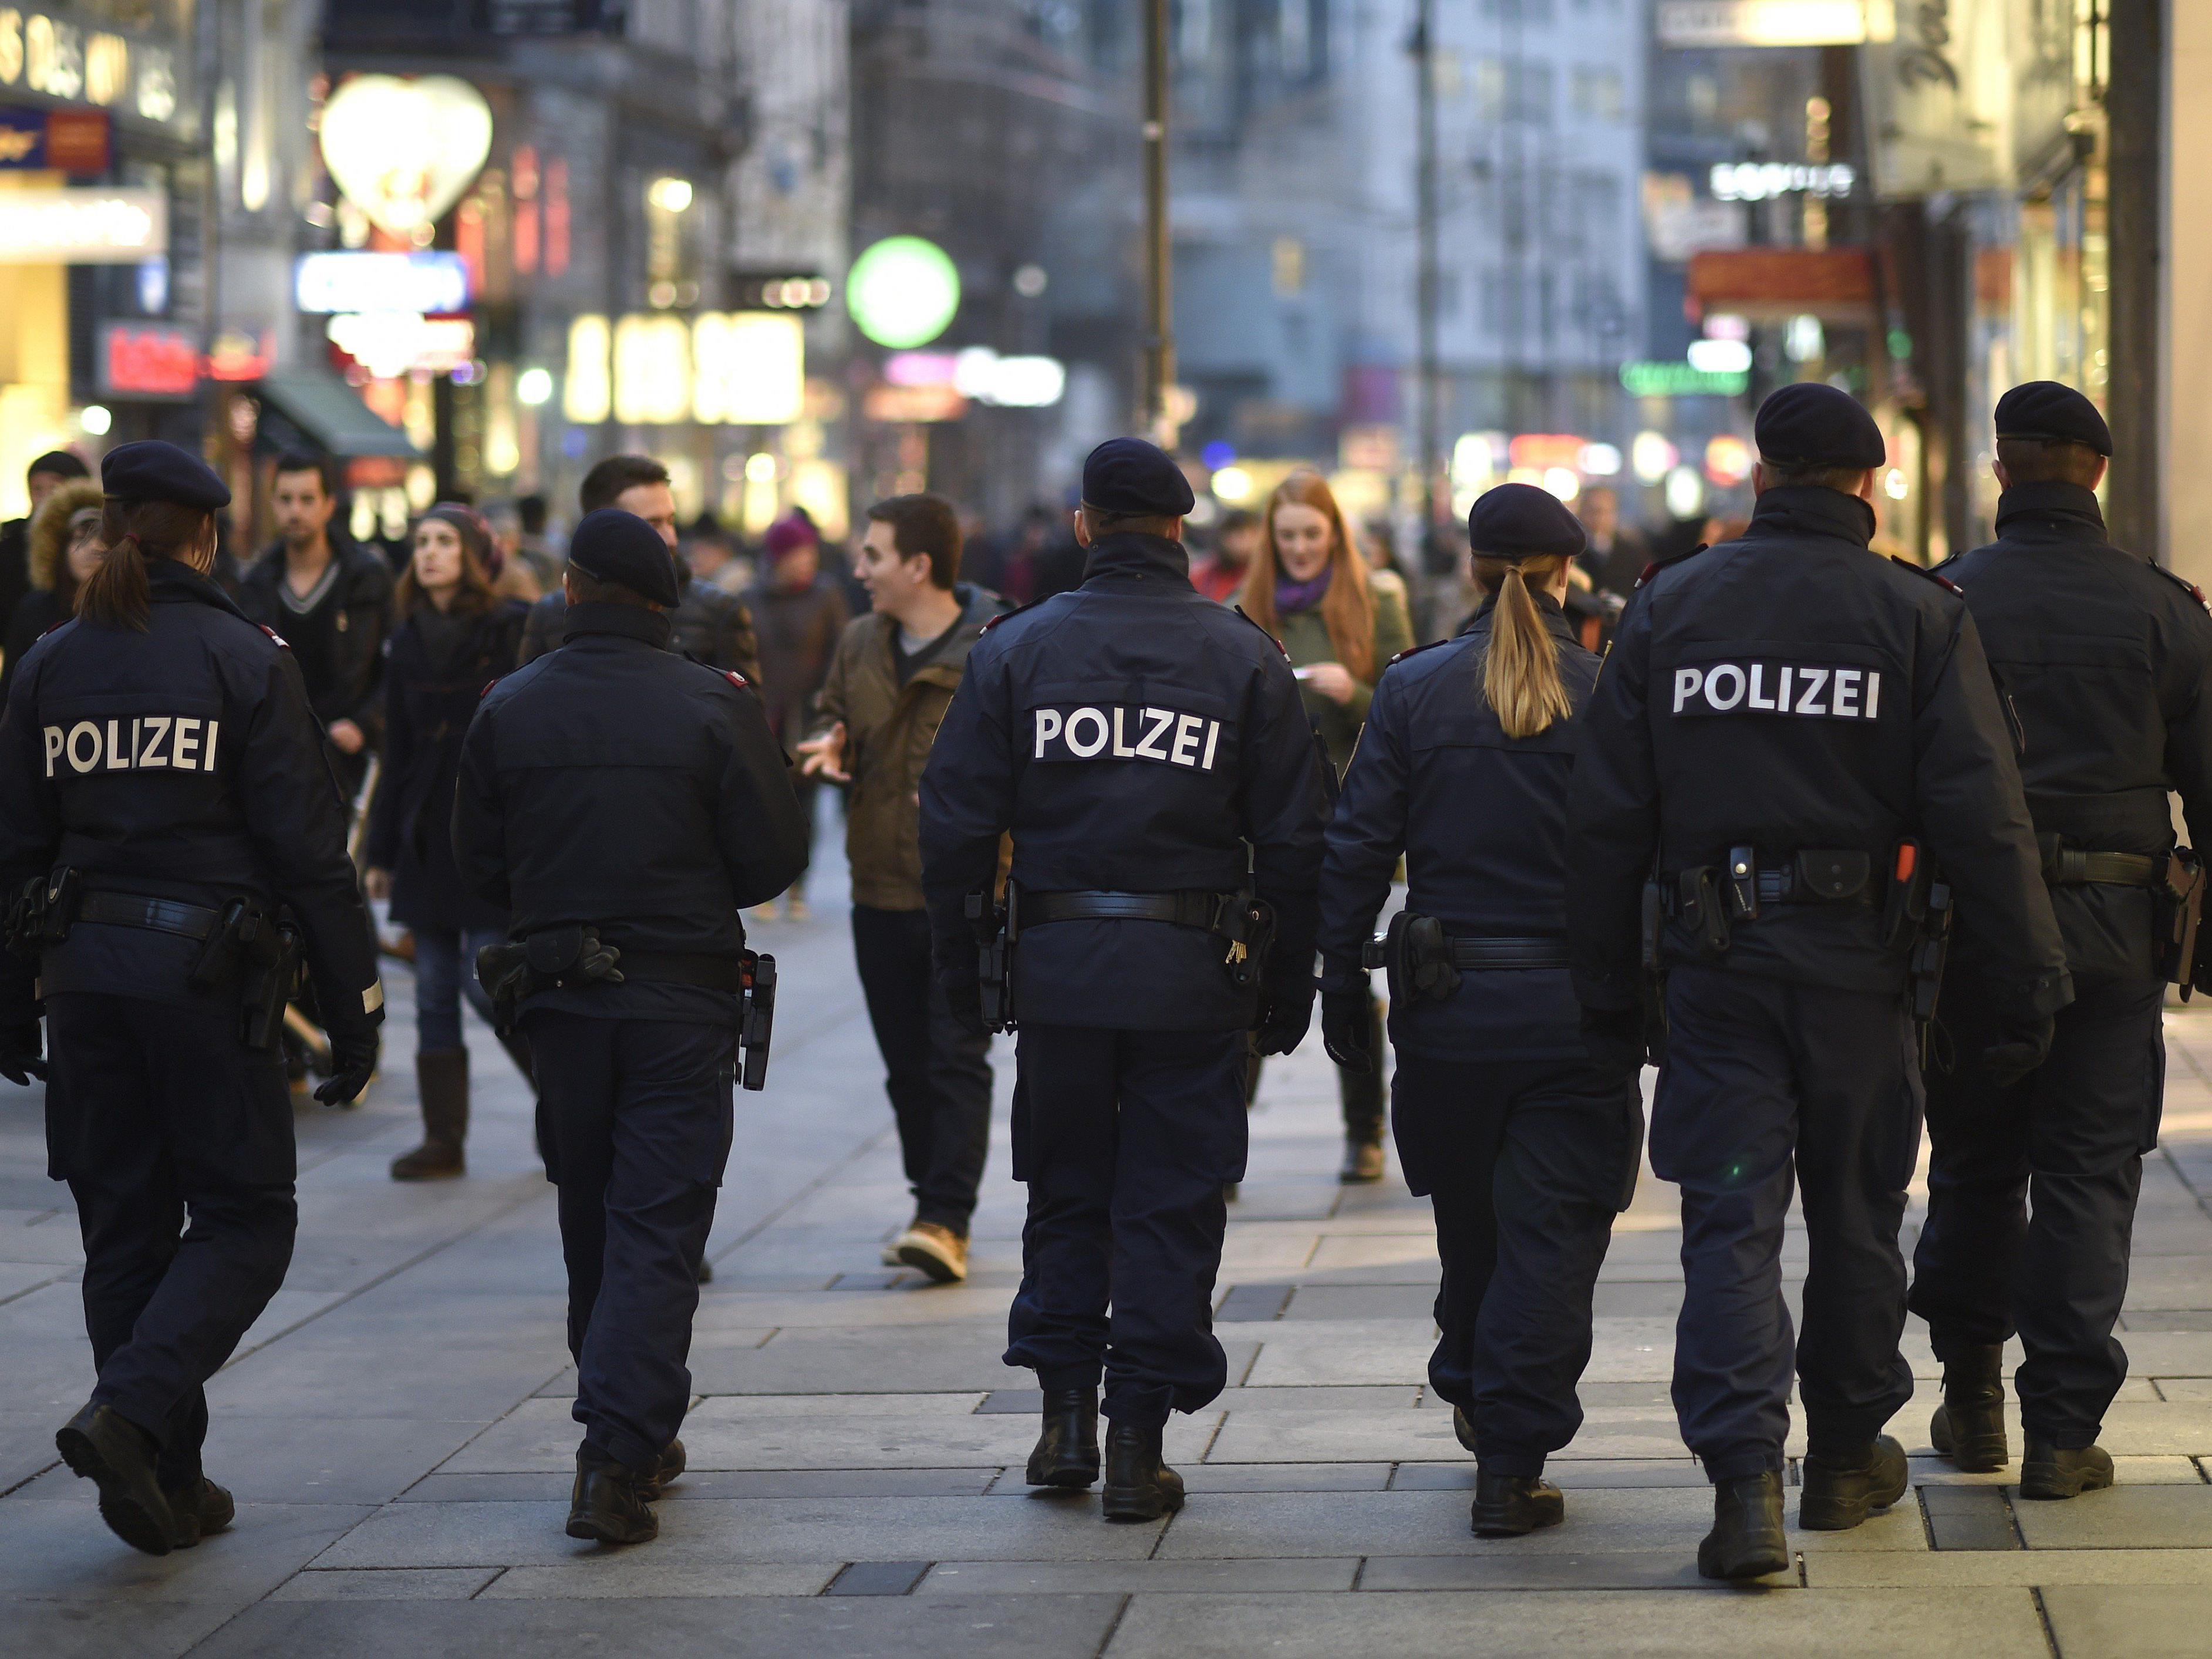 Unsere Frage des Tages: Ist Wien sicherer geworden?